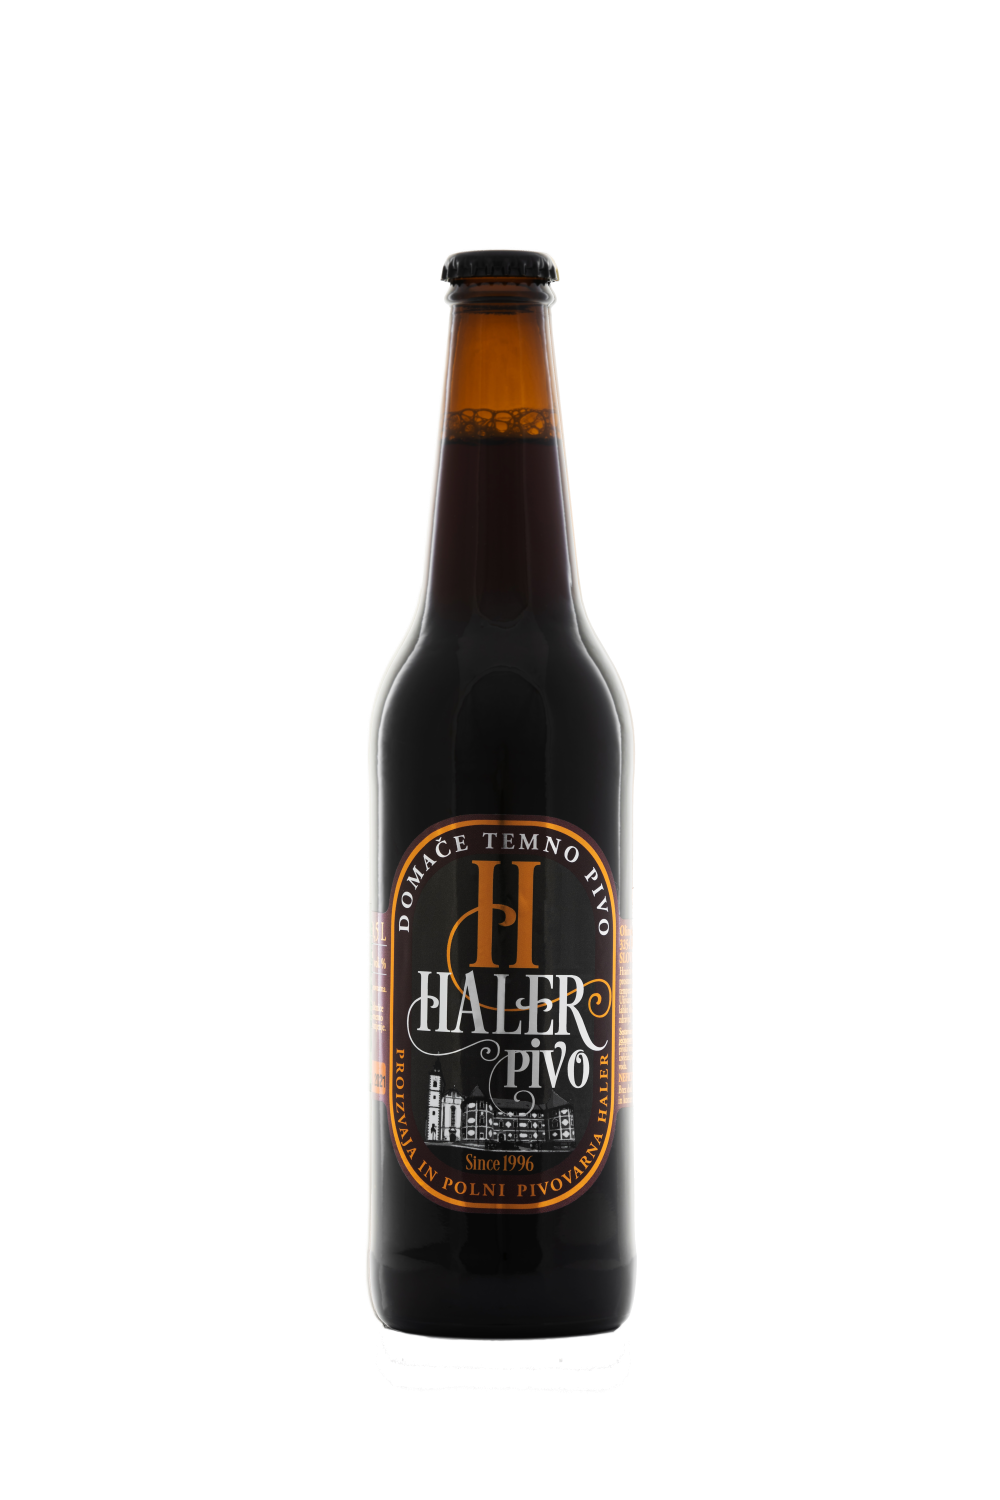 Dark Haler beer